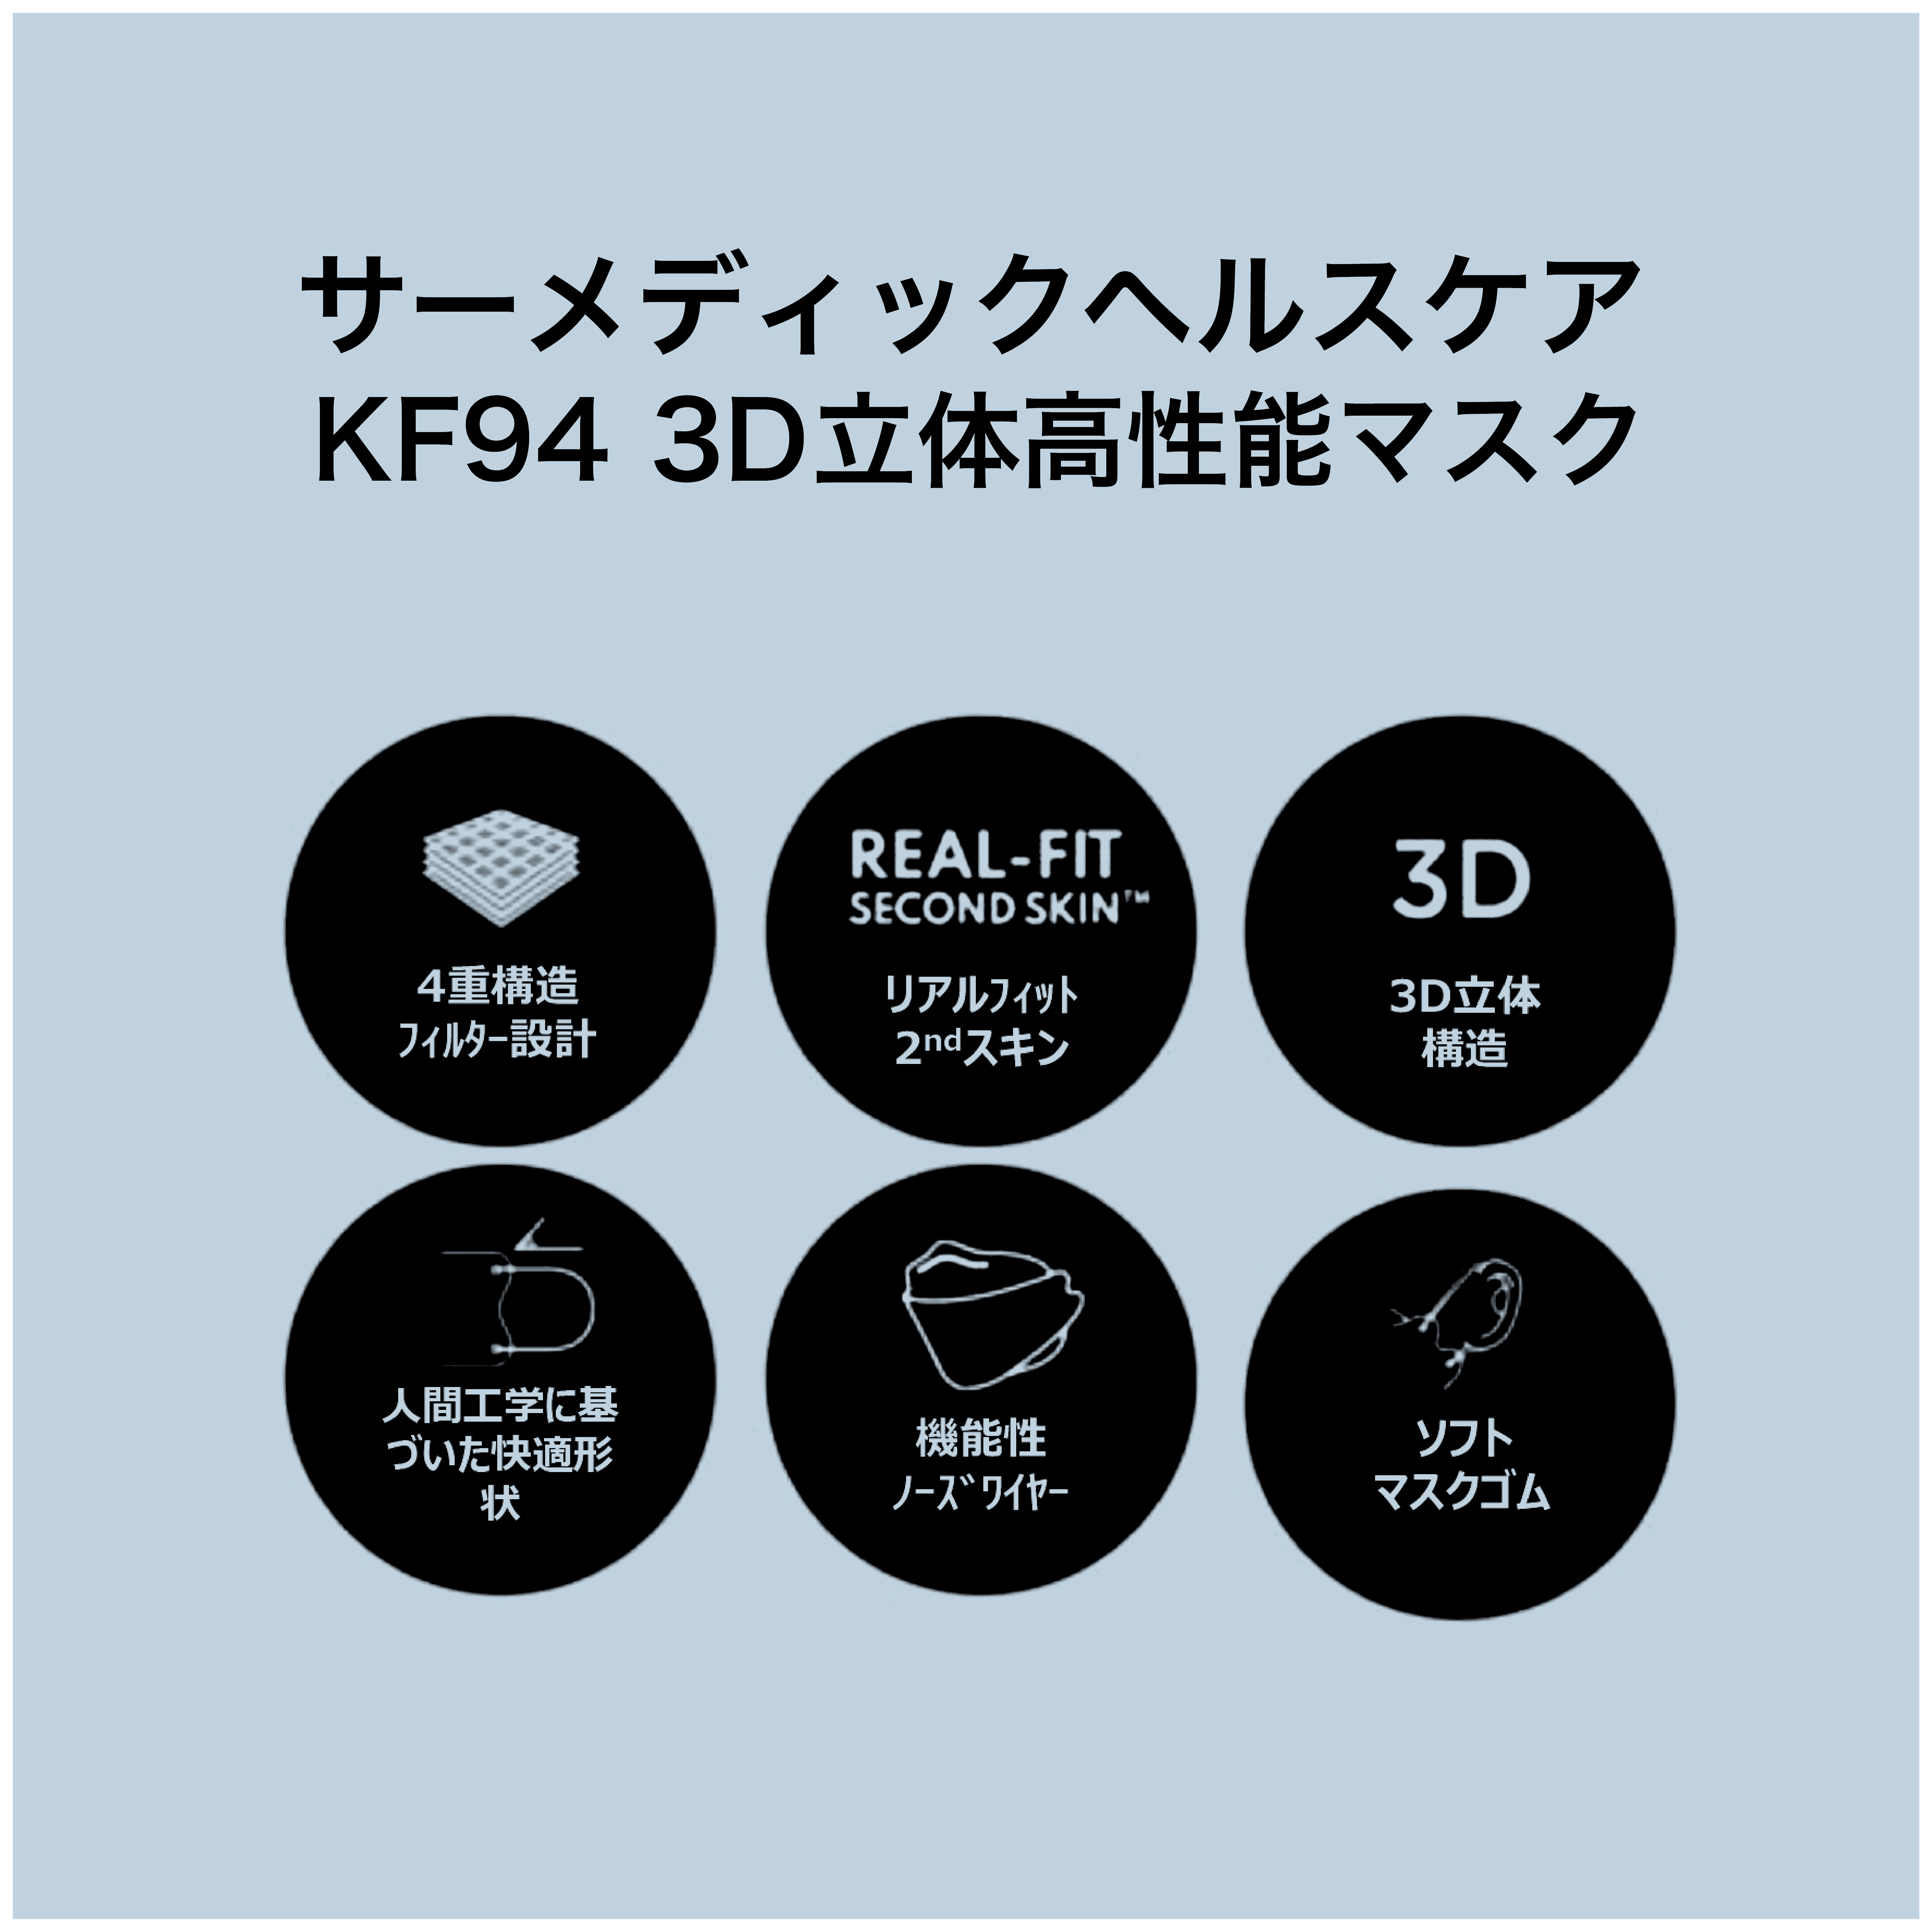 【快適な新型コロナウイルスの対策をしたいあなたへ】韓国で流行中の肌にやさしい3D立体高性能マスク